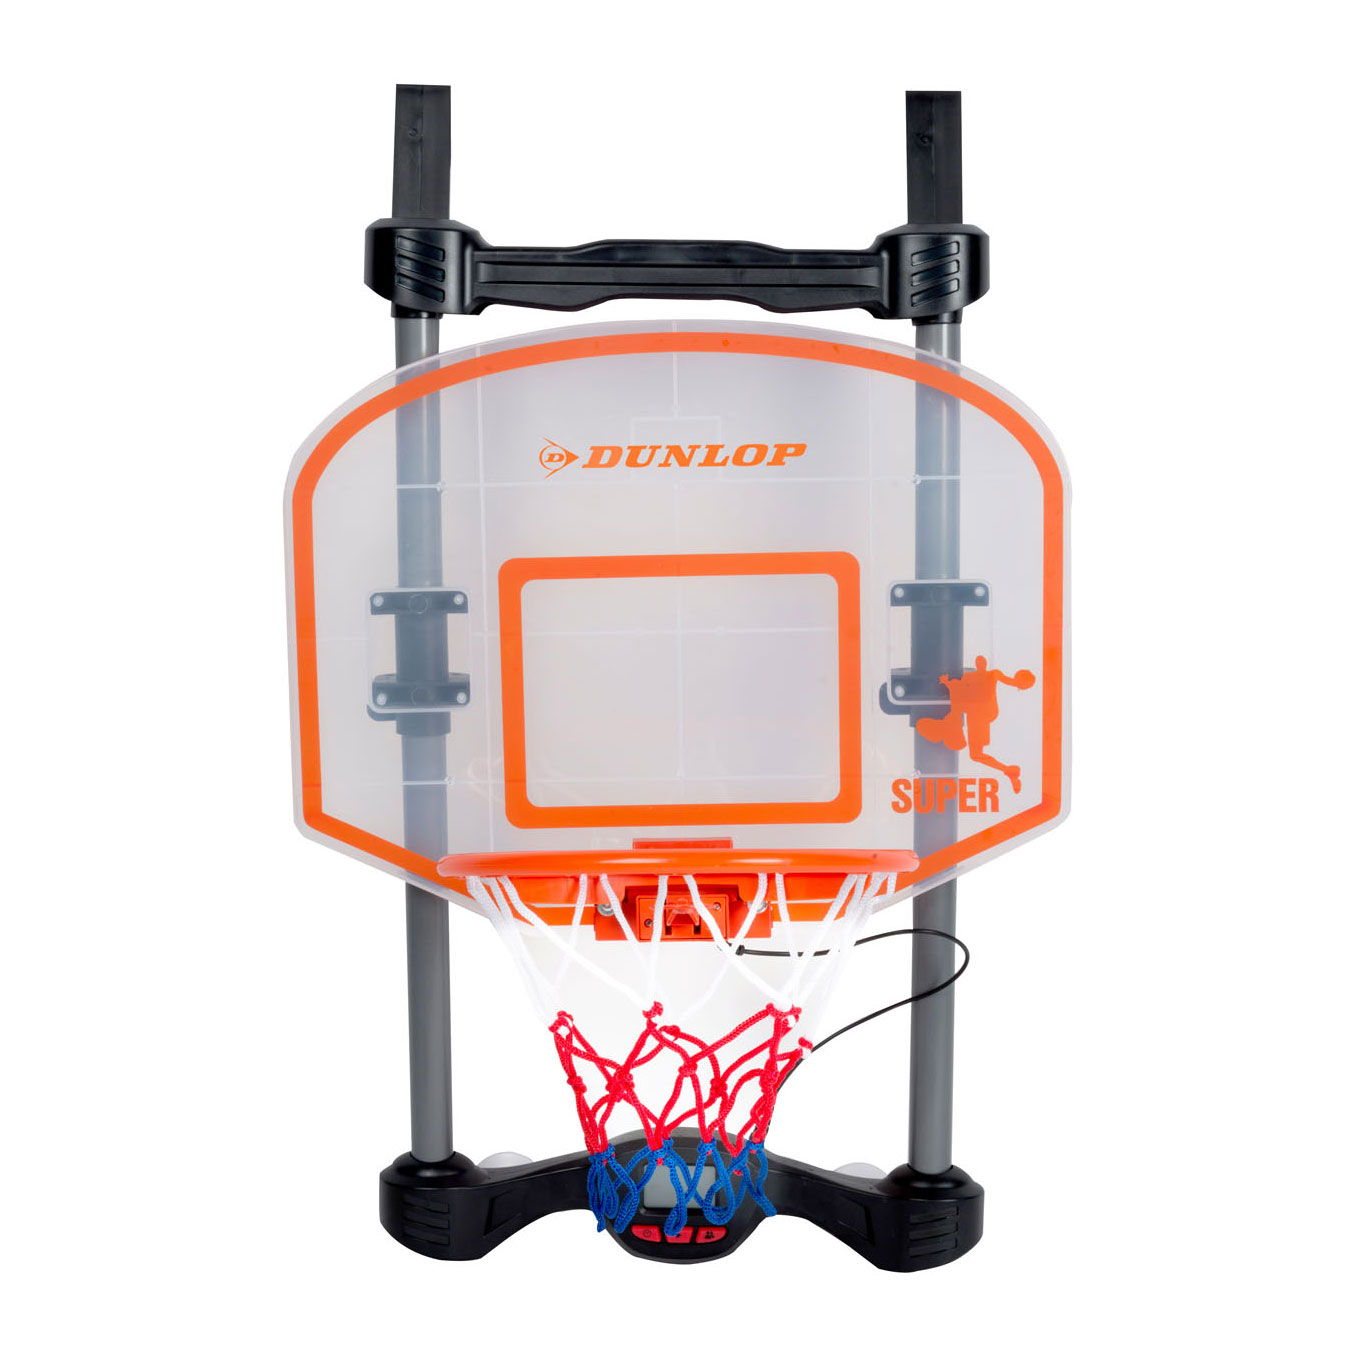 Dunlop Elektronische Basketbalbord